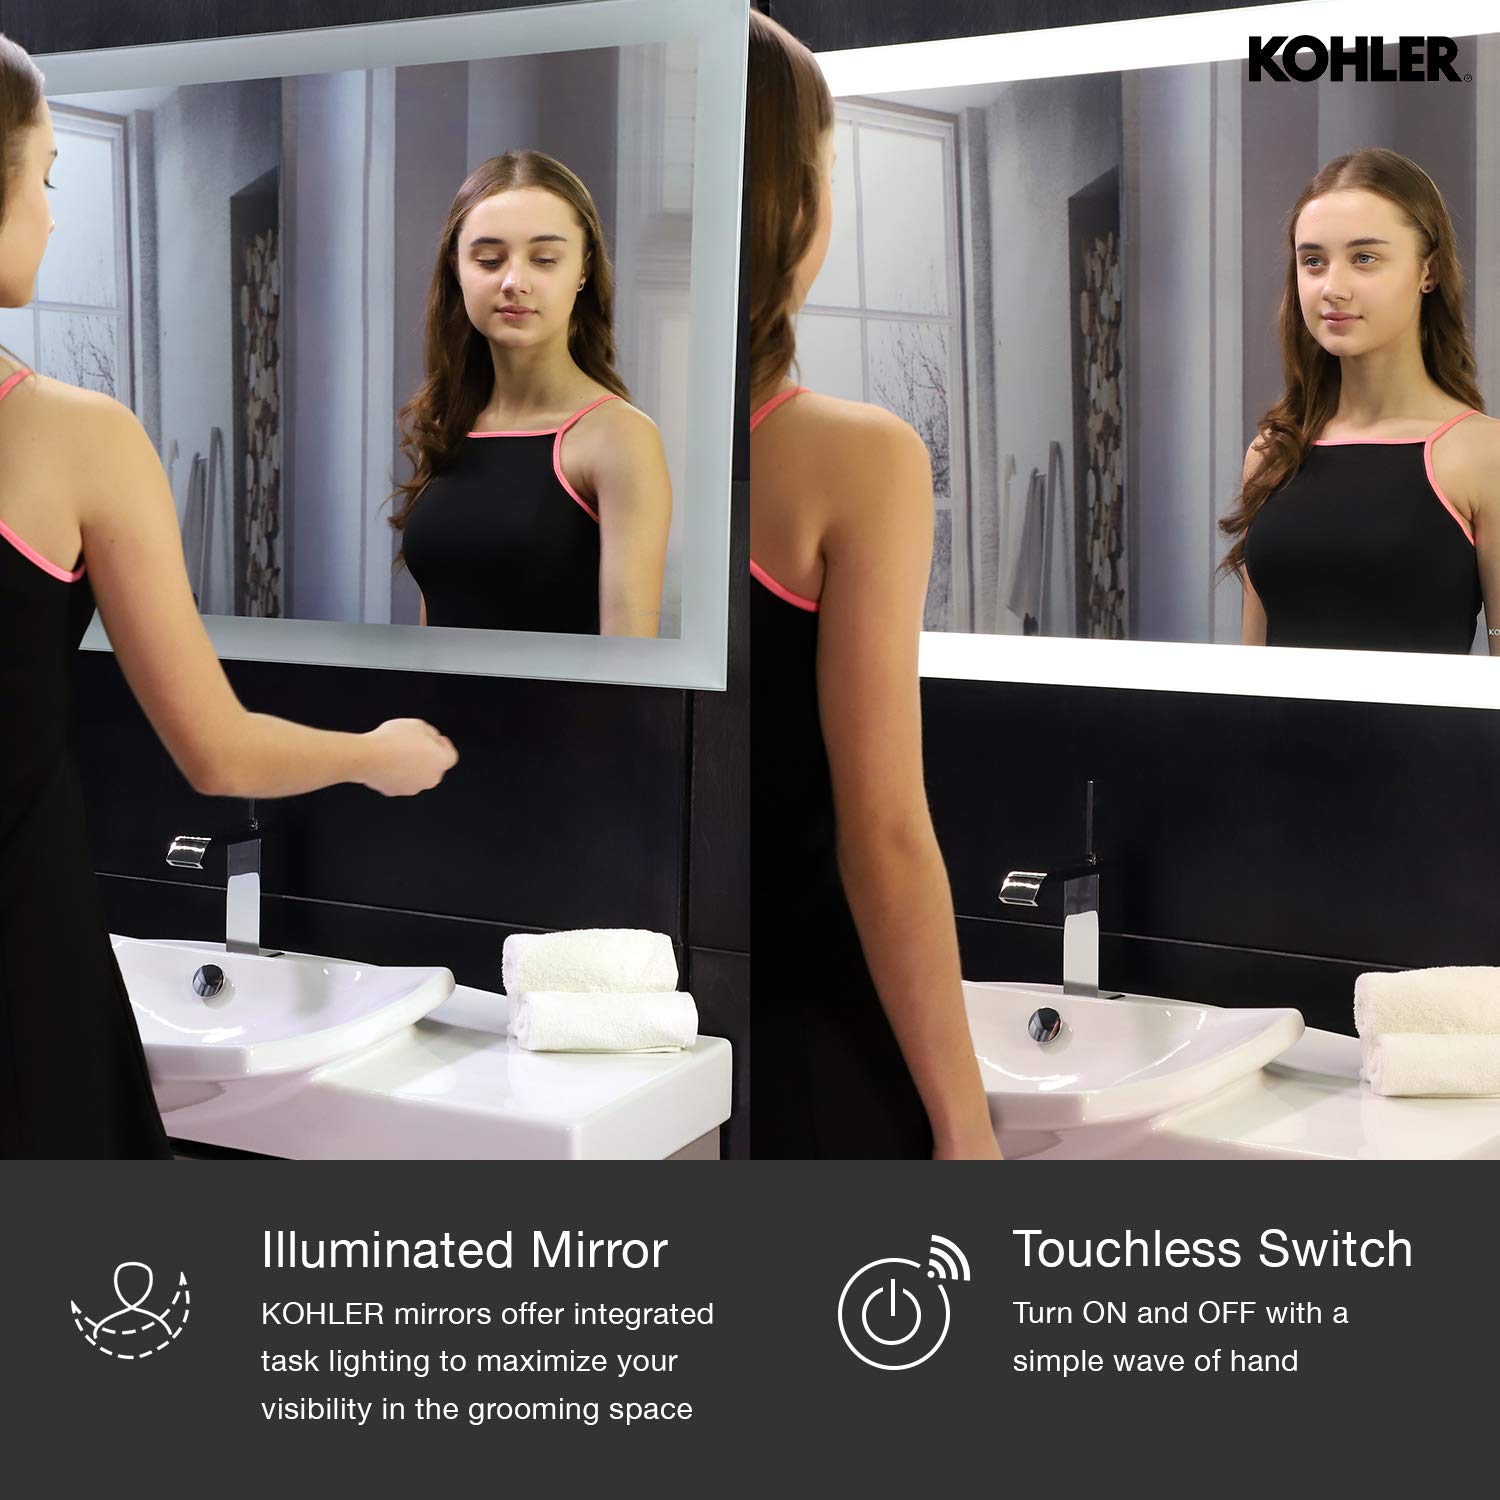 Amazon Deal: बाथरूम और ड्रेसिंग एरिया को दें नया लुक, खरीदें ये टचलेस LED लाइट वाला मिरर